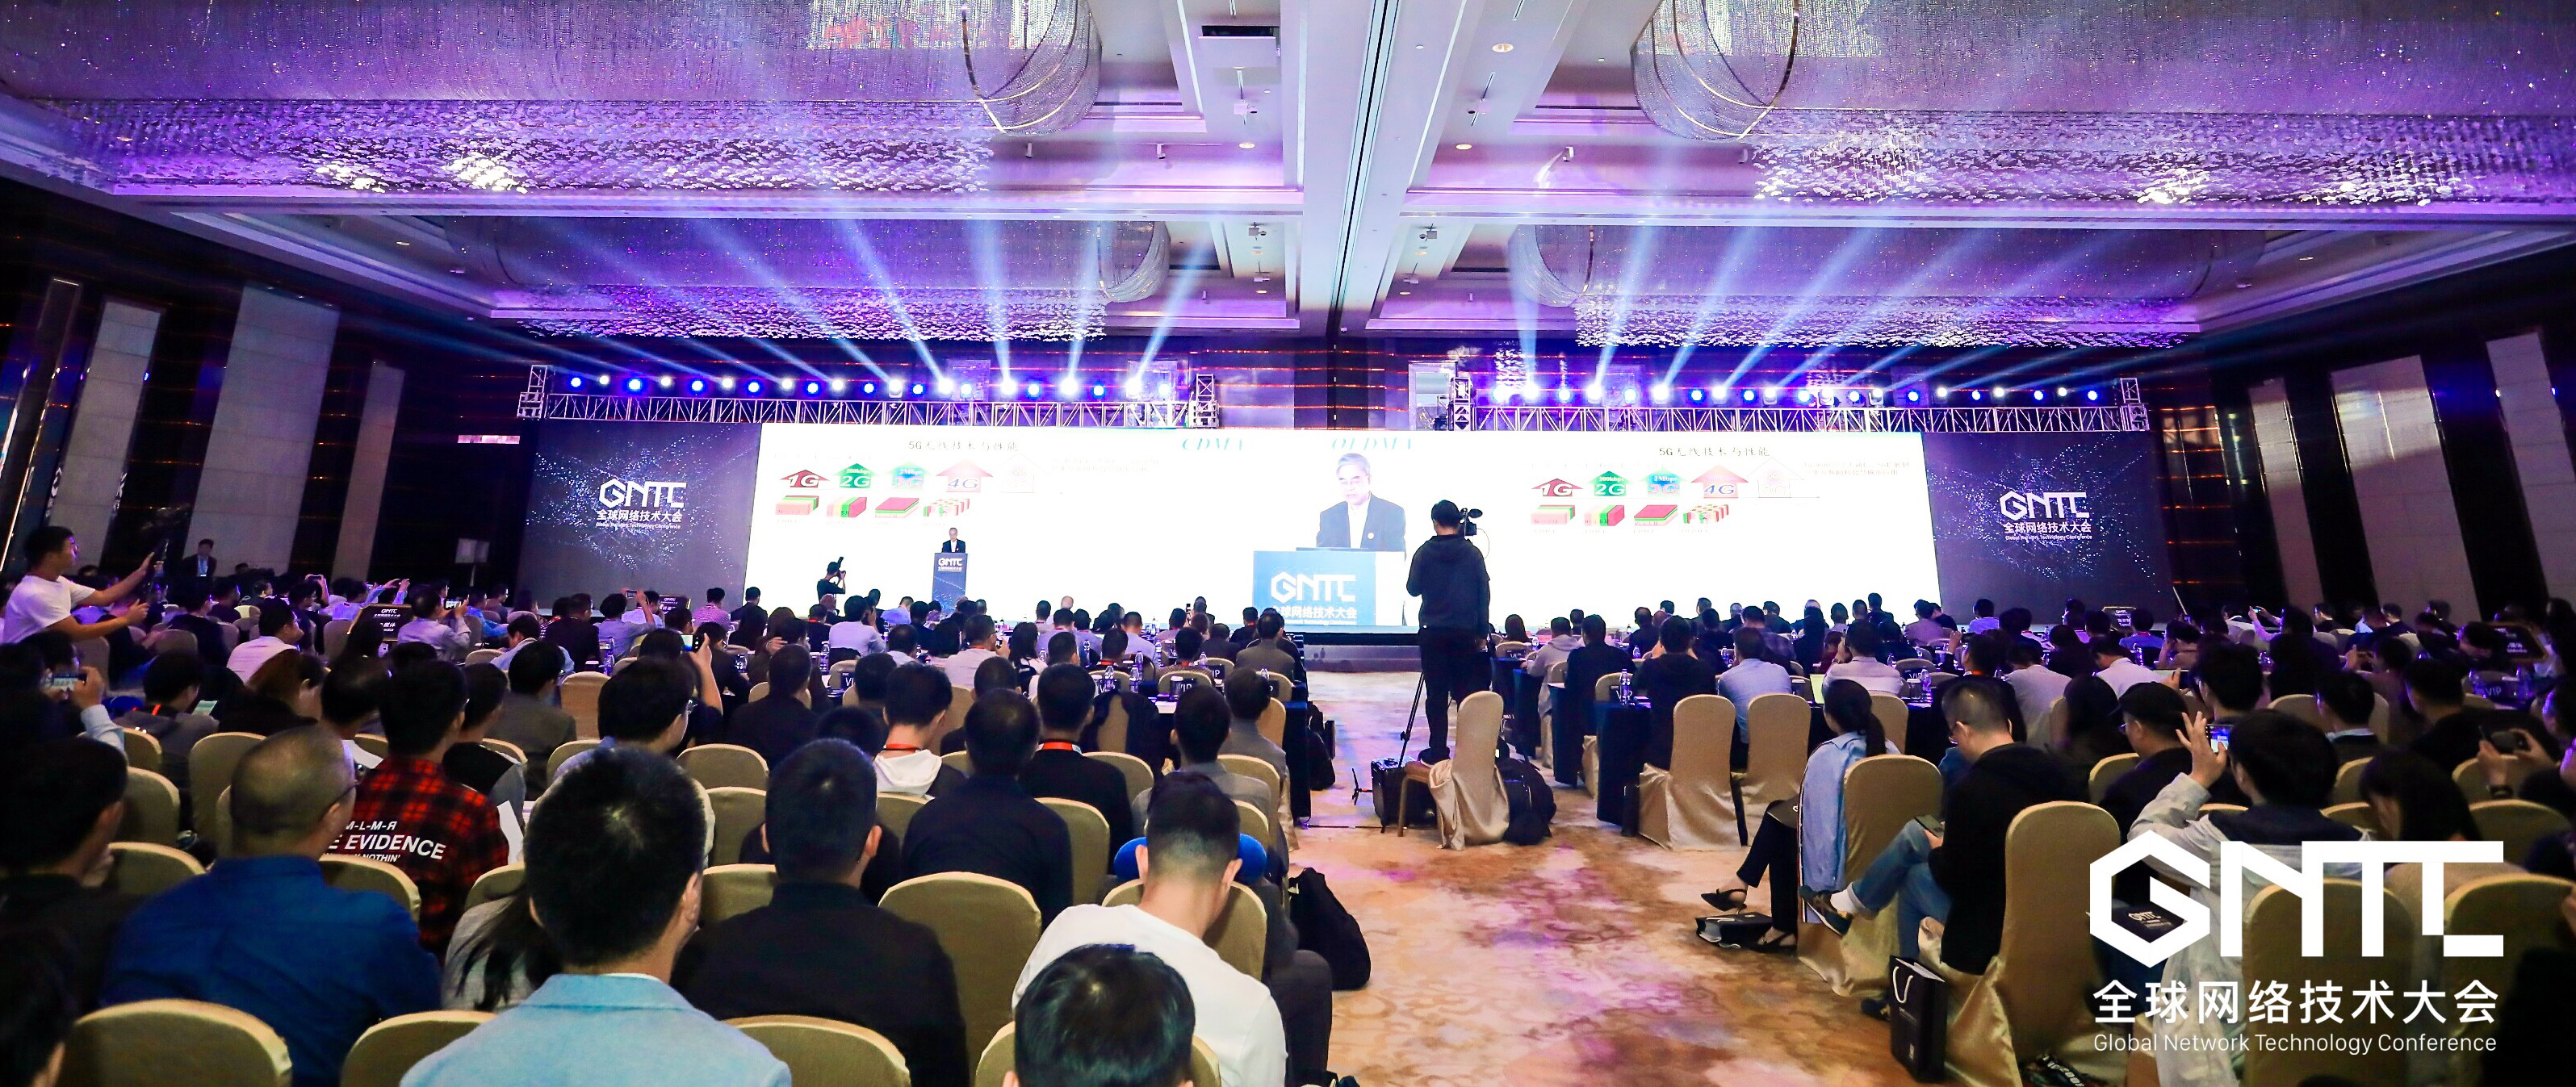 立足先进网络技术构建新型数字基础设施 GNTC 2019南京开幕